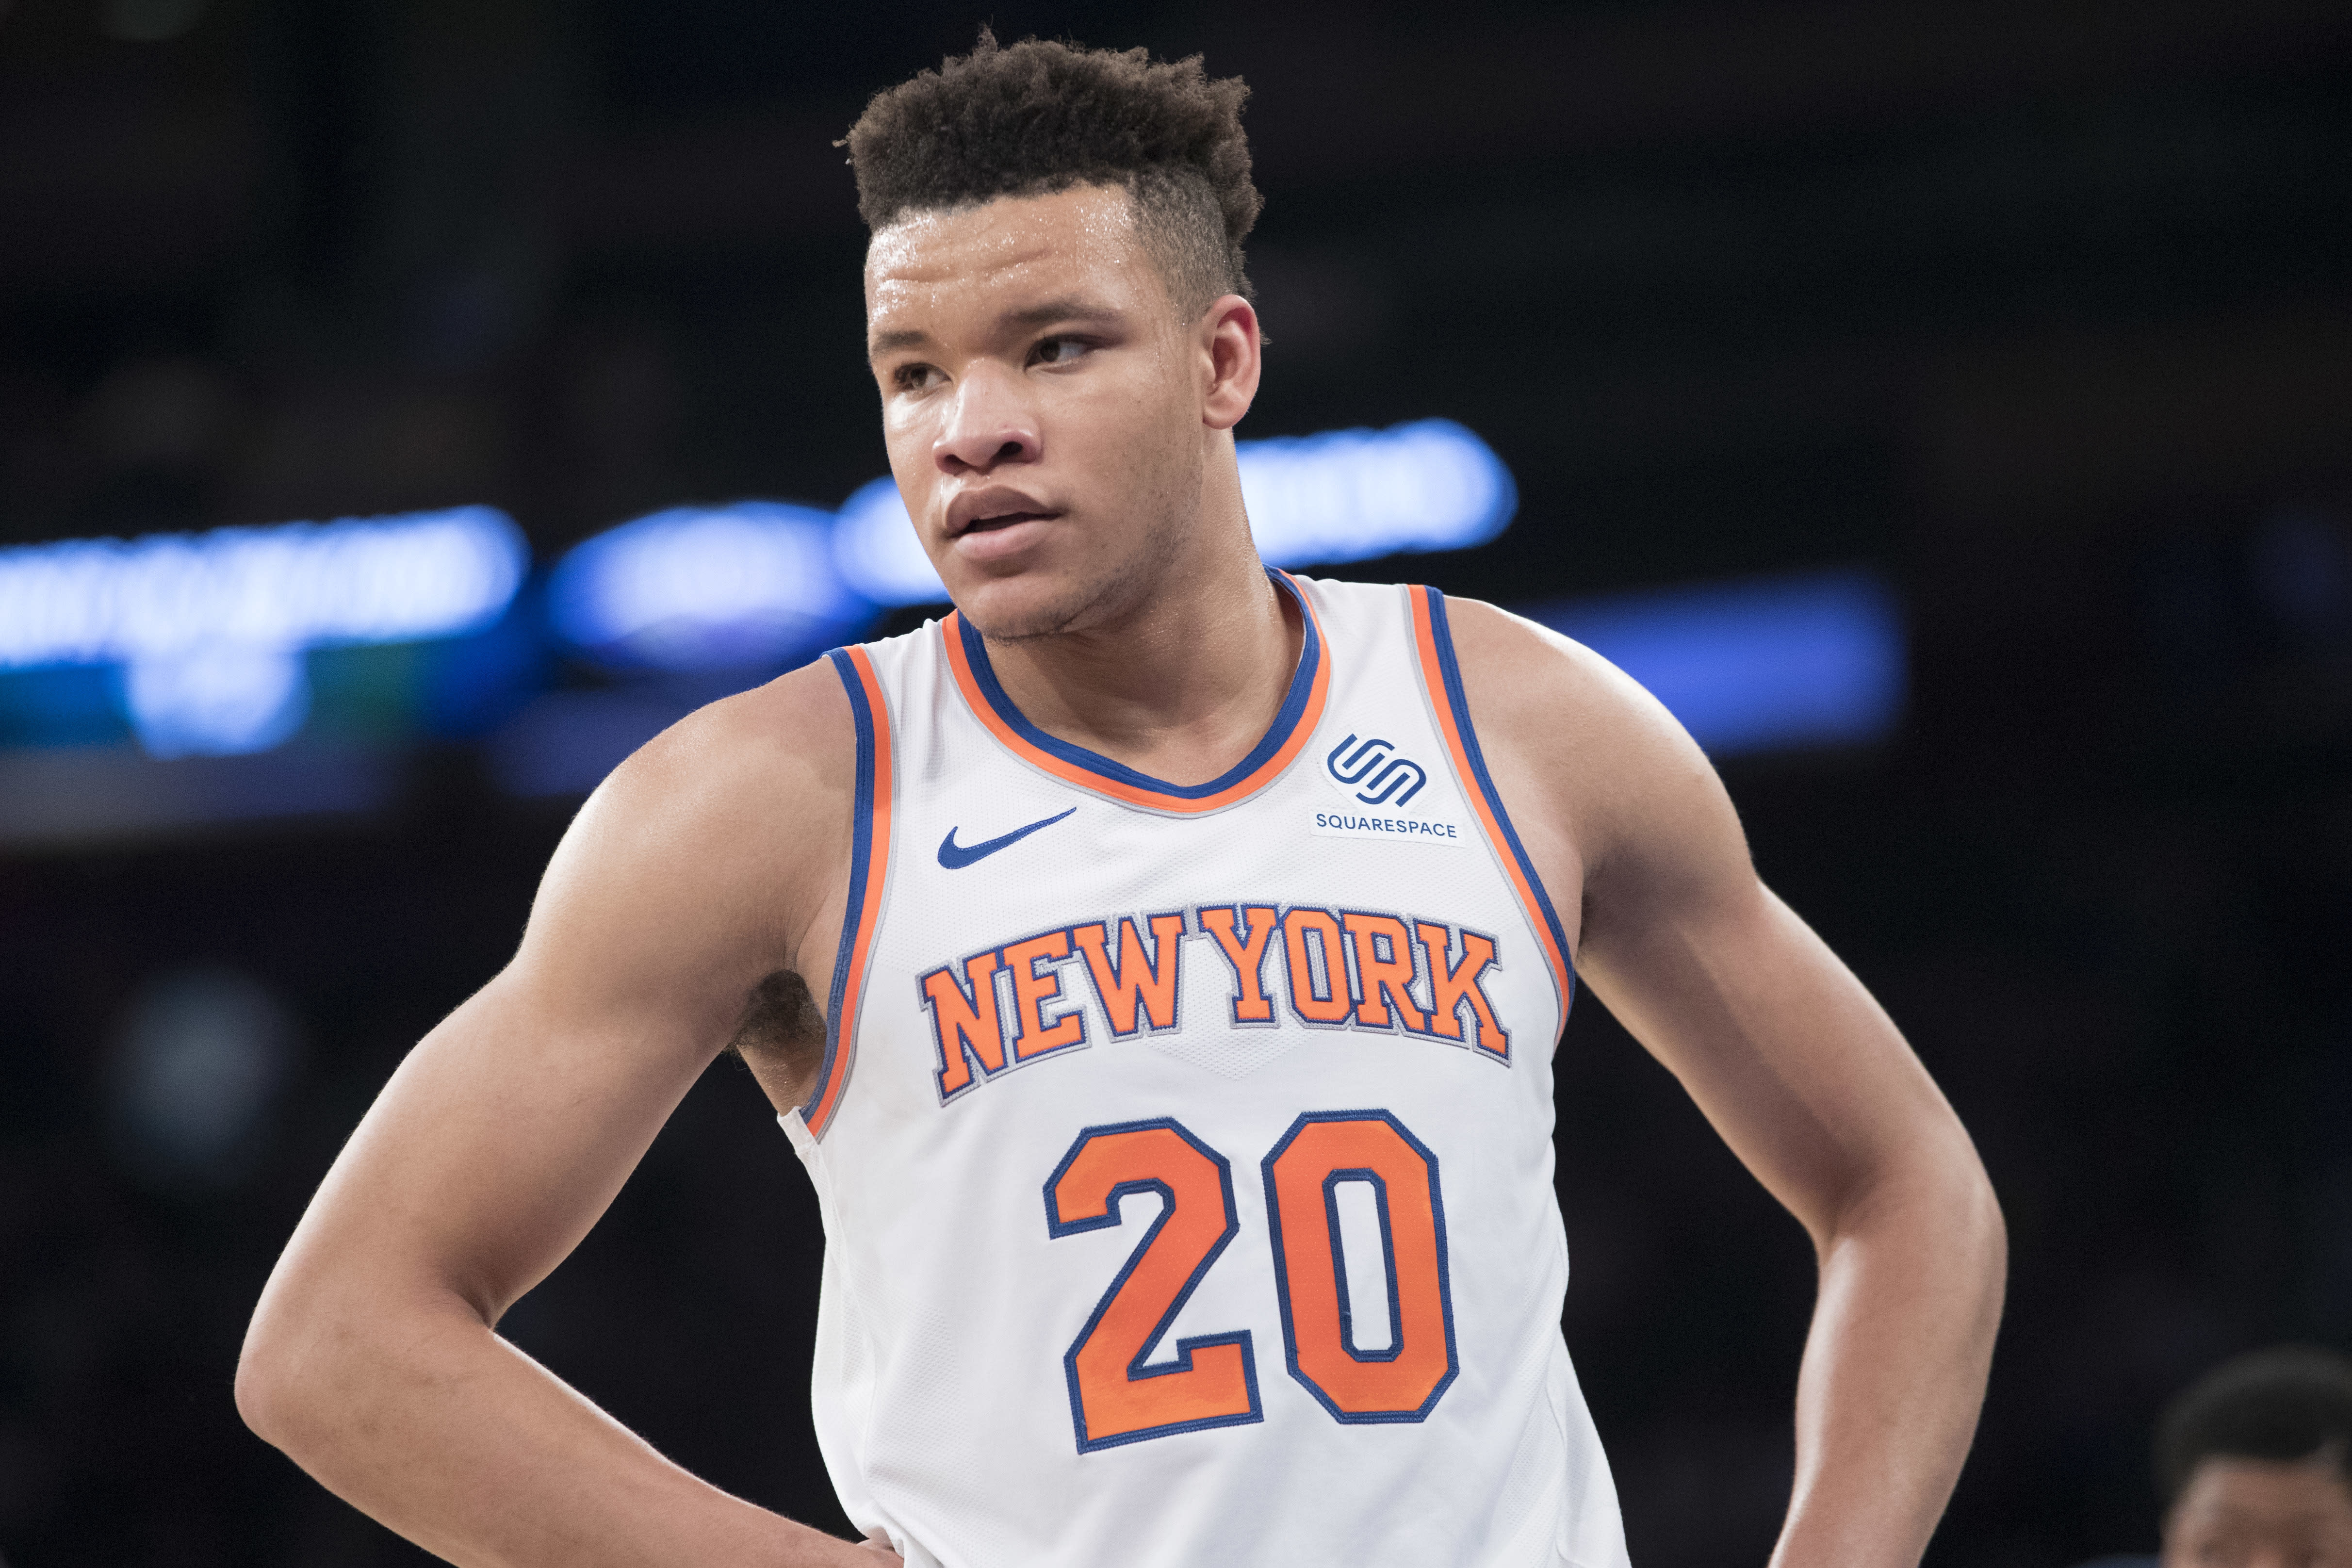 NBA: New York Knicks 2018-19 season preview4848 x 3232